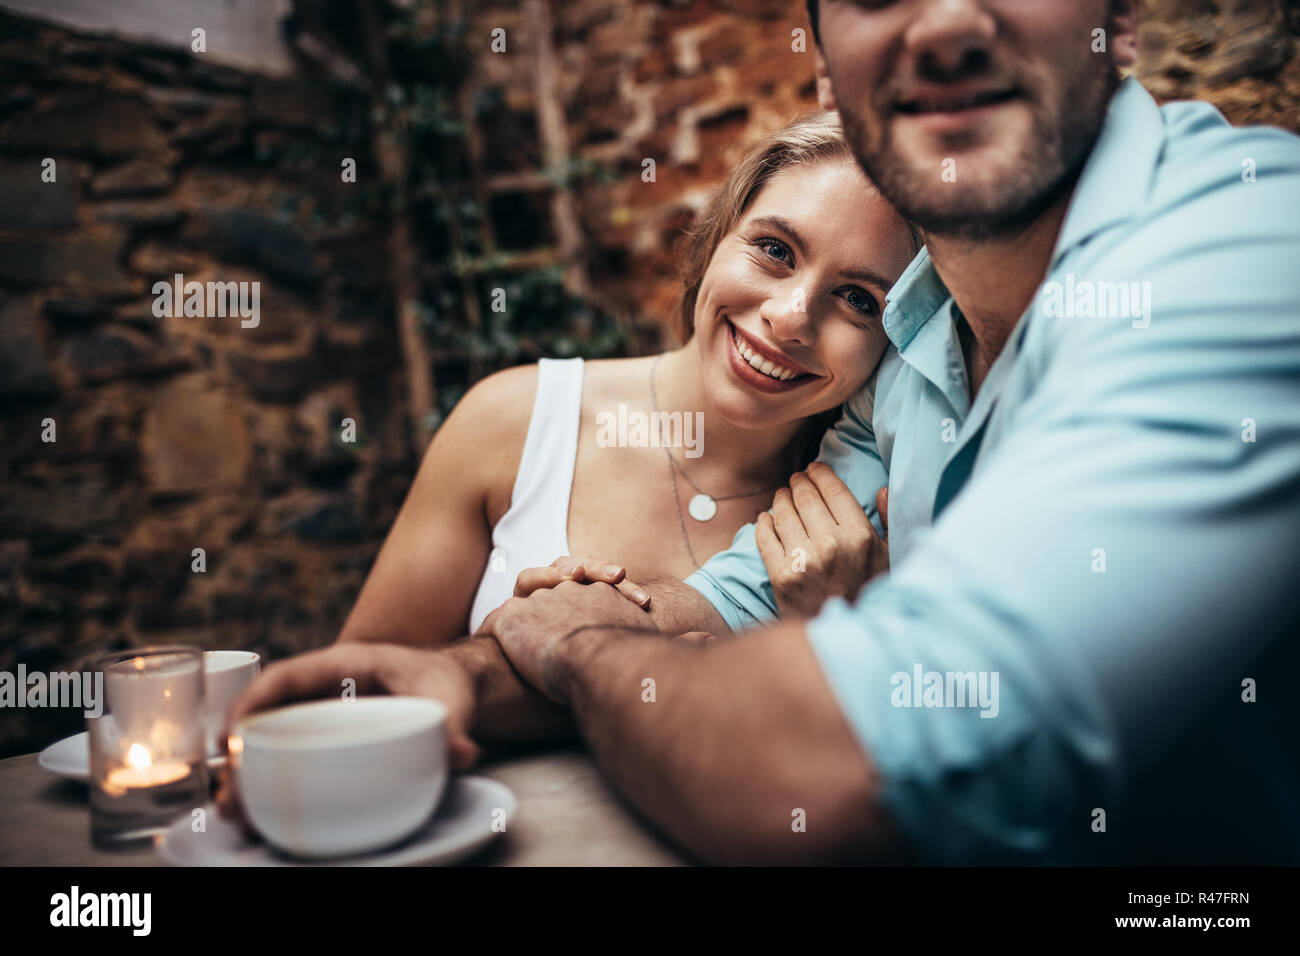 Lächelnde Frau sitzt mit ihrem Freund in einem Restaurant hielt seinen Arm. Paar zusammen in einem Café die Zeit zusammen zu sitzen. Stockfoto